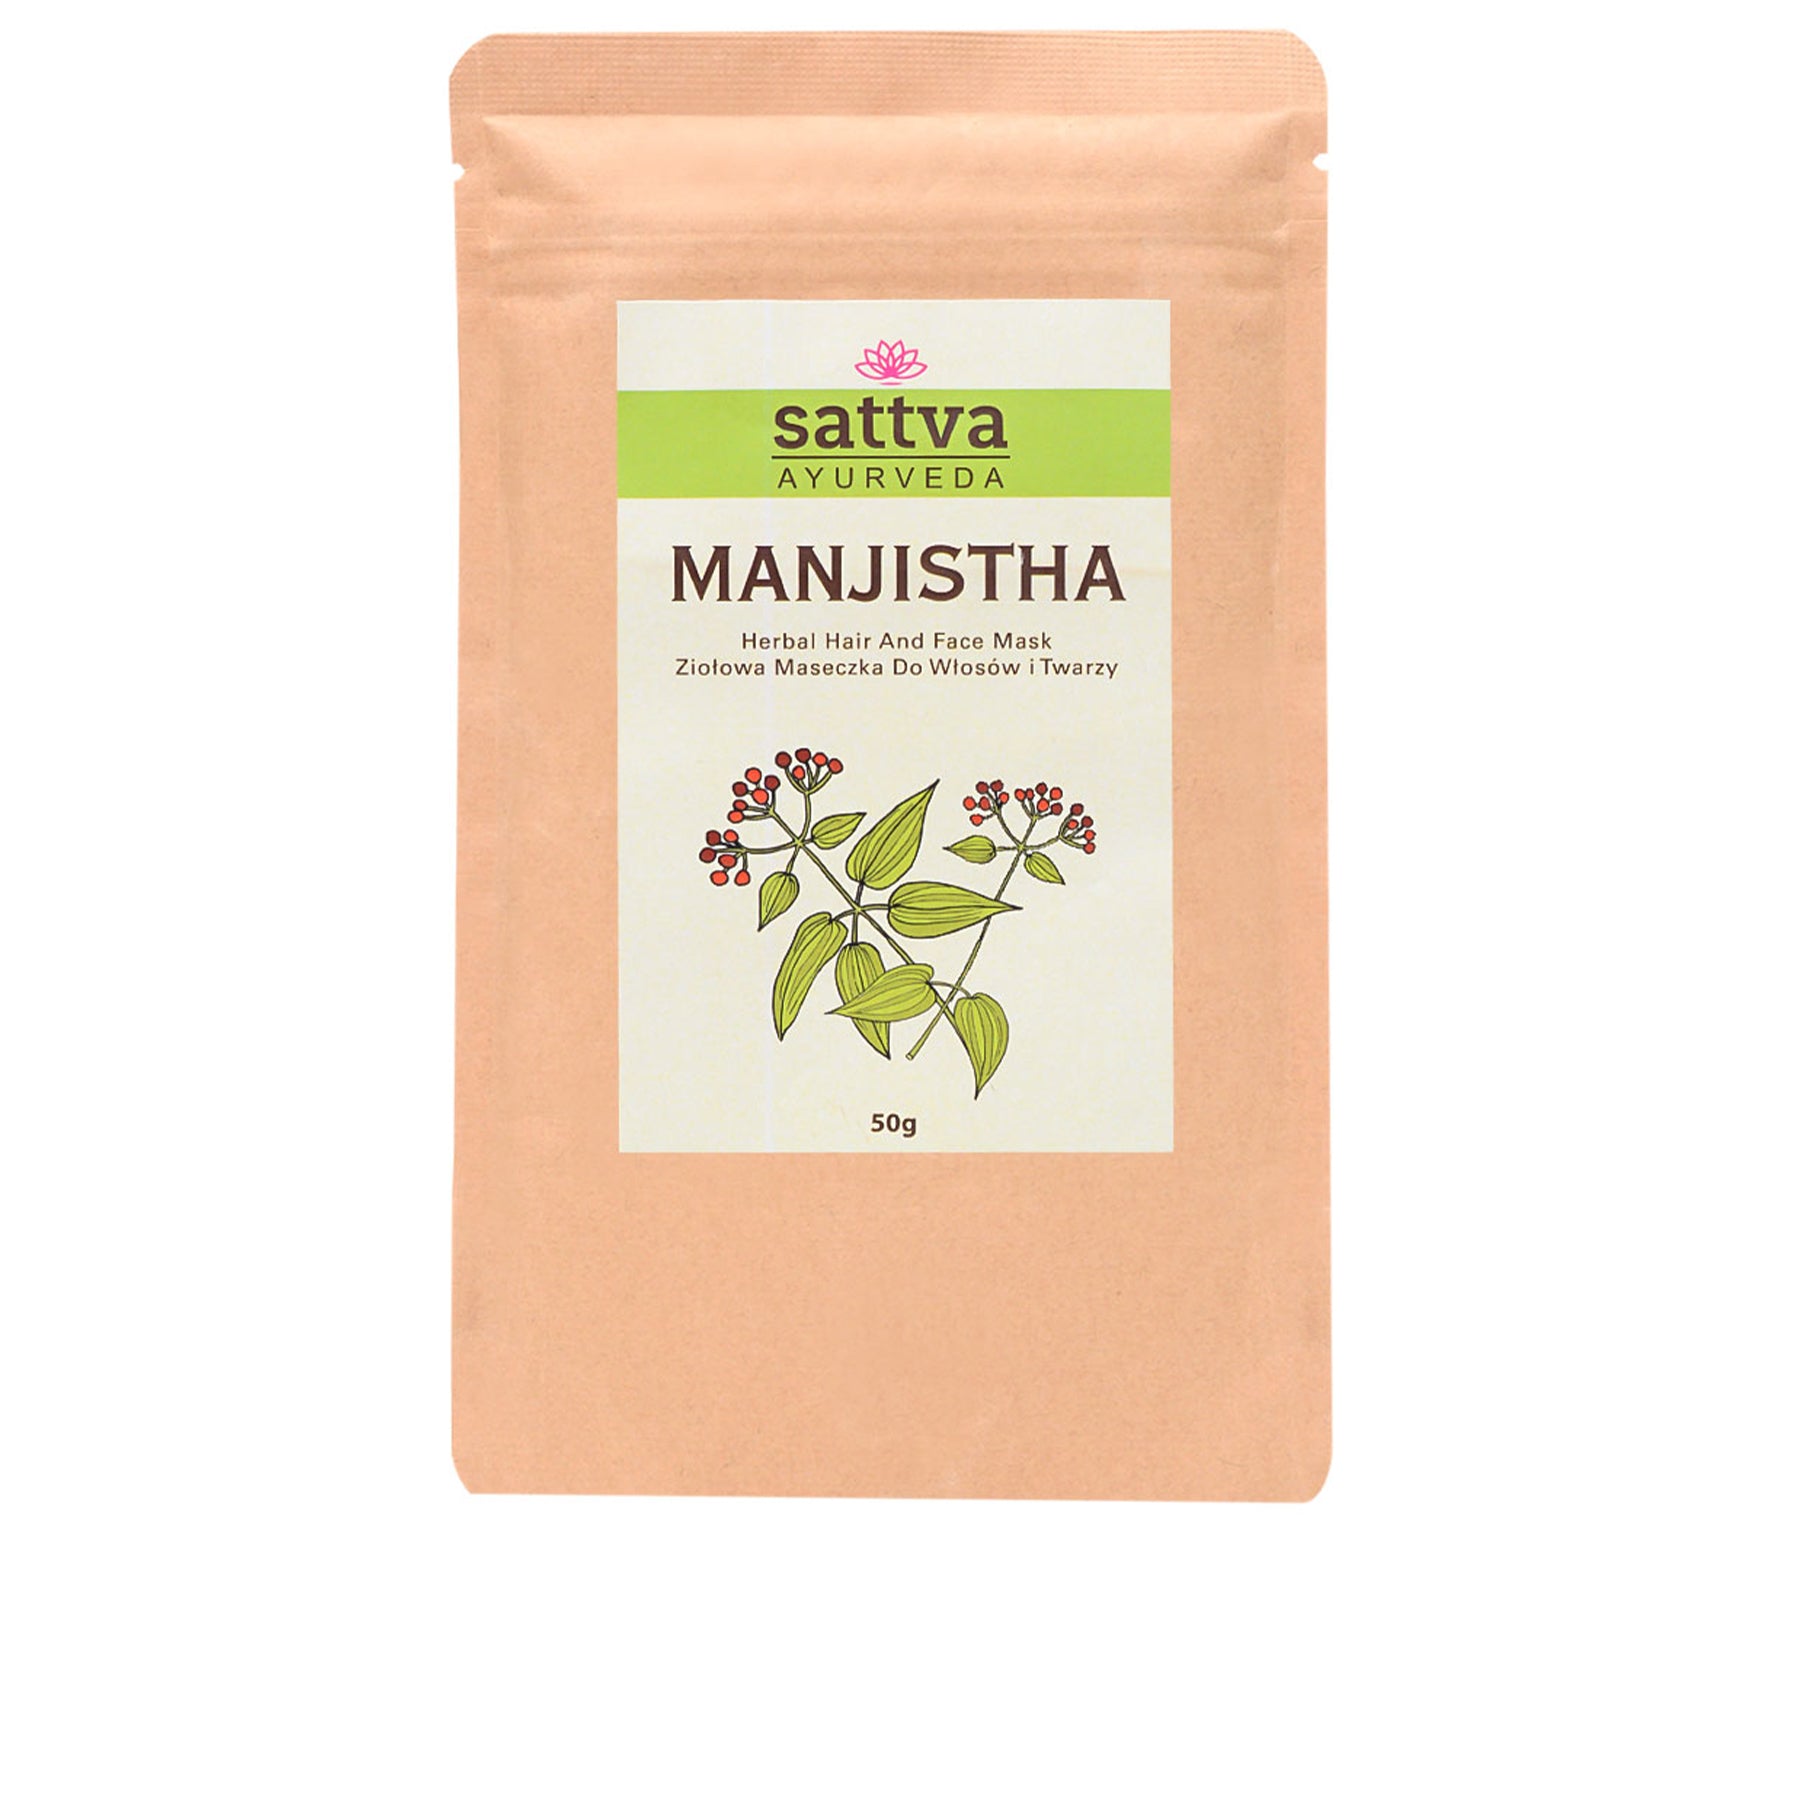 Manjistha Herbal Face and Hair Mask Powder